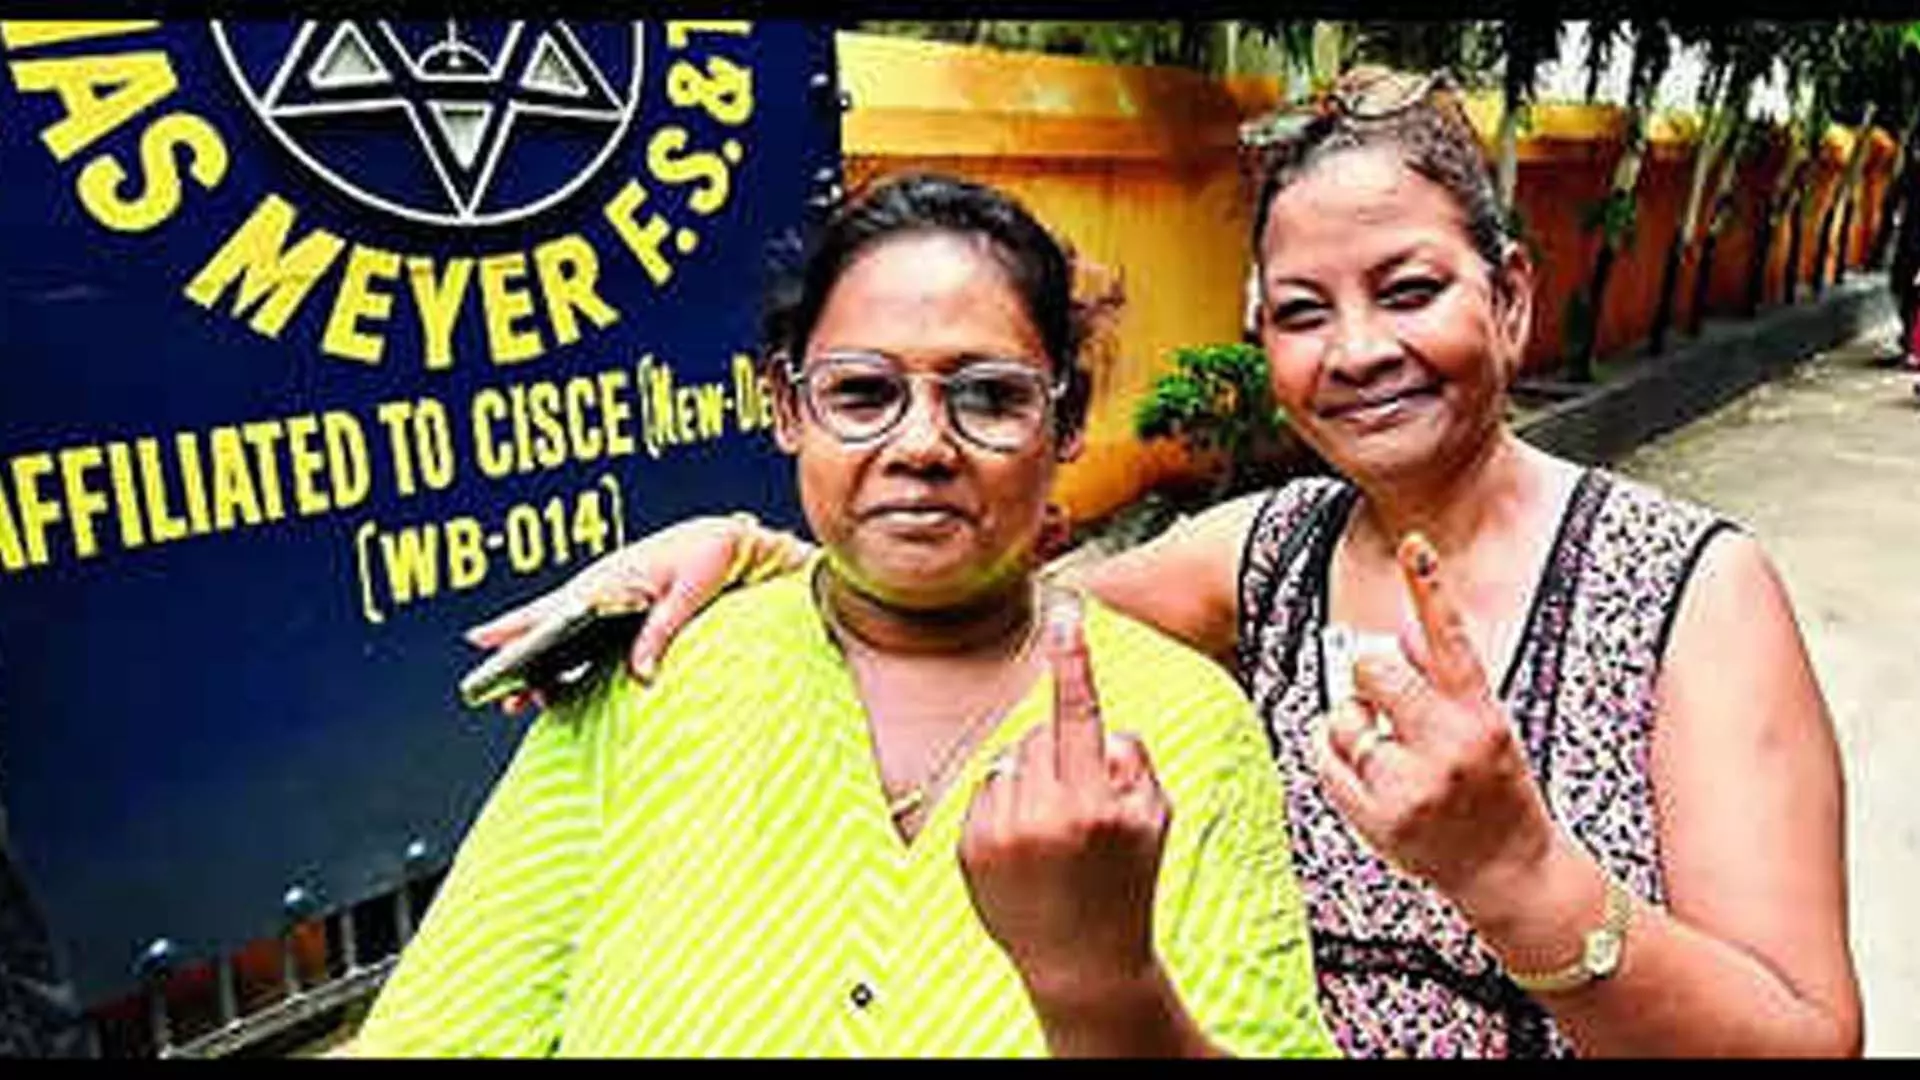 Kolkata: बो बैरक्स में मतदान केन्द्रों पर सुबह की भीड़ बड़ी संख्या में मतदान हुआ